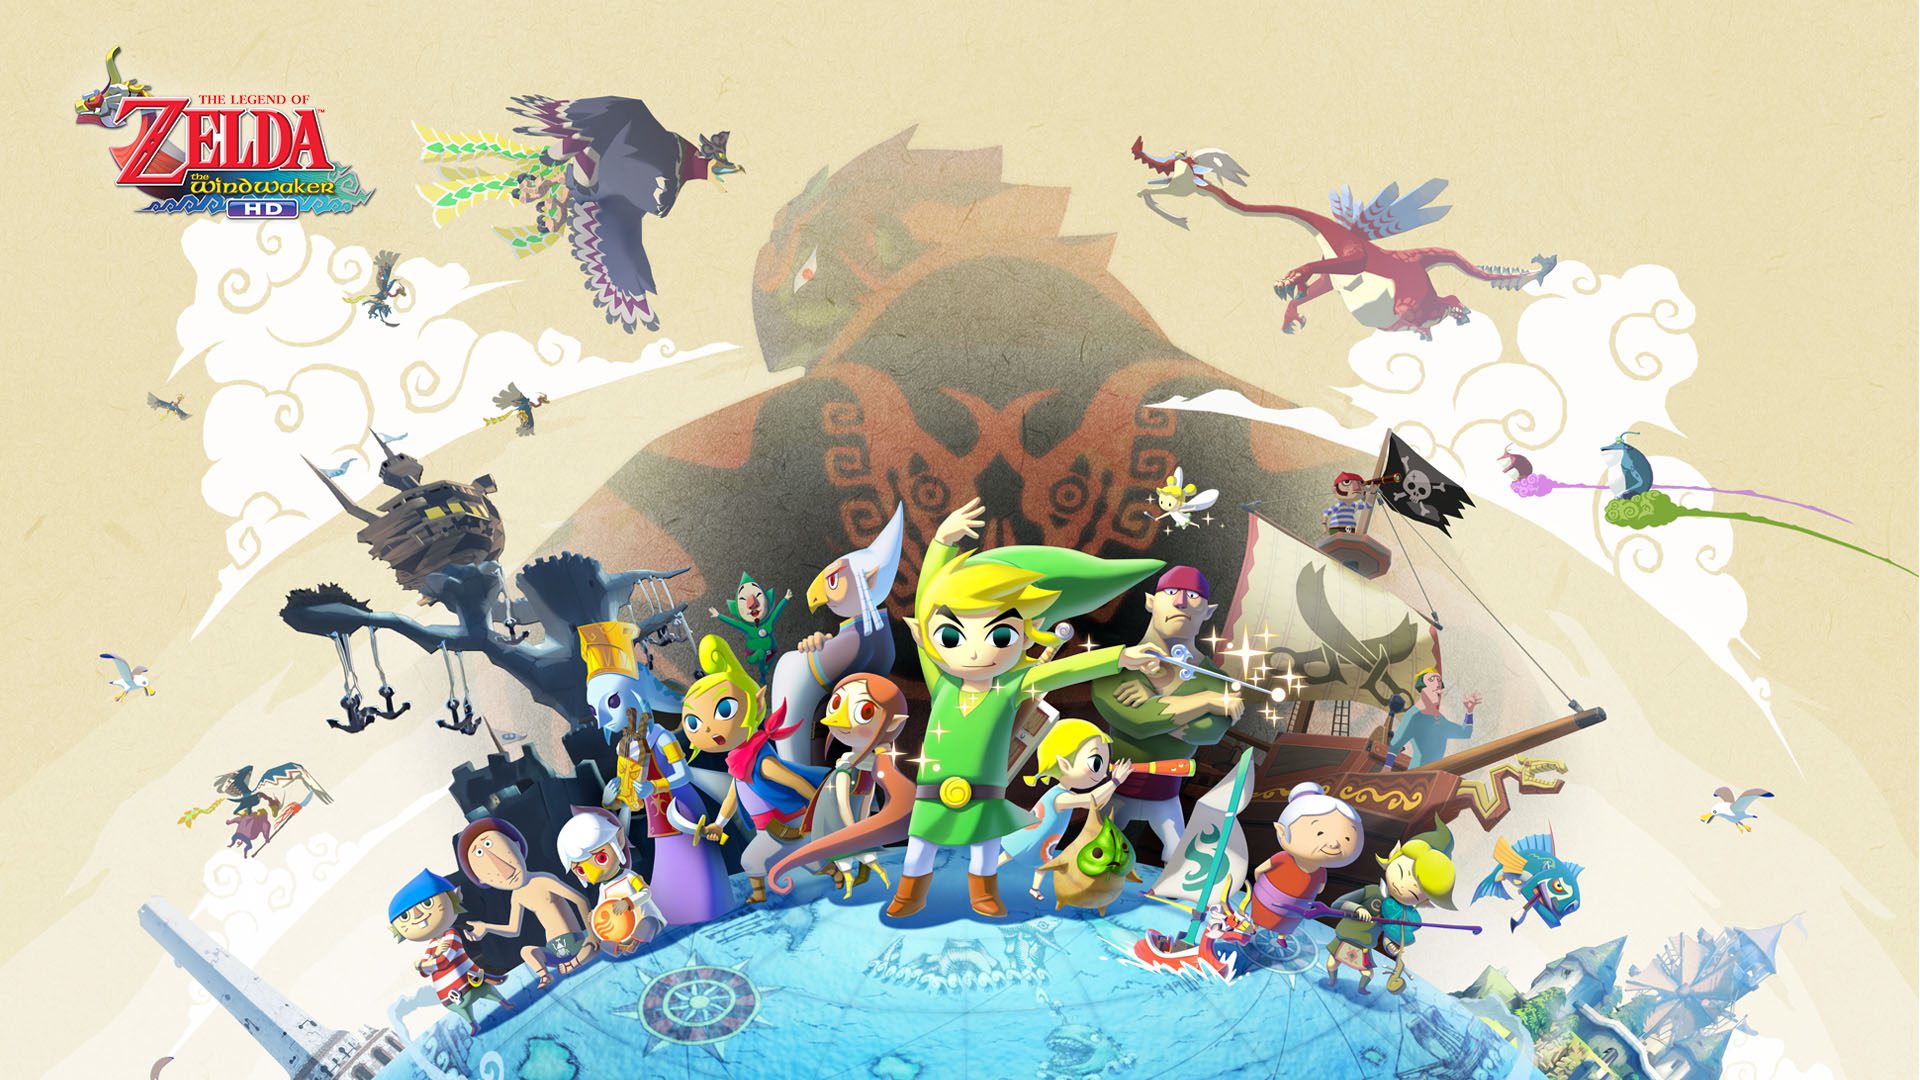 The Legend of Zelda: Wind Waker key art